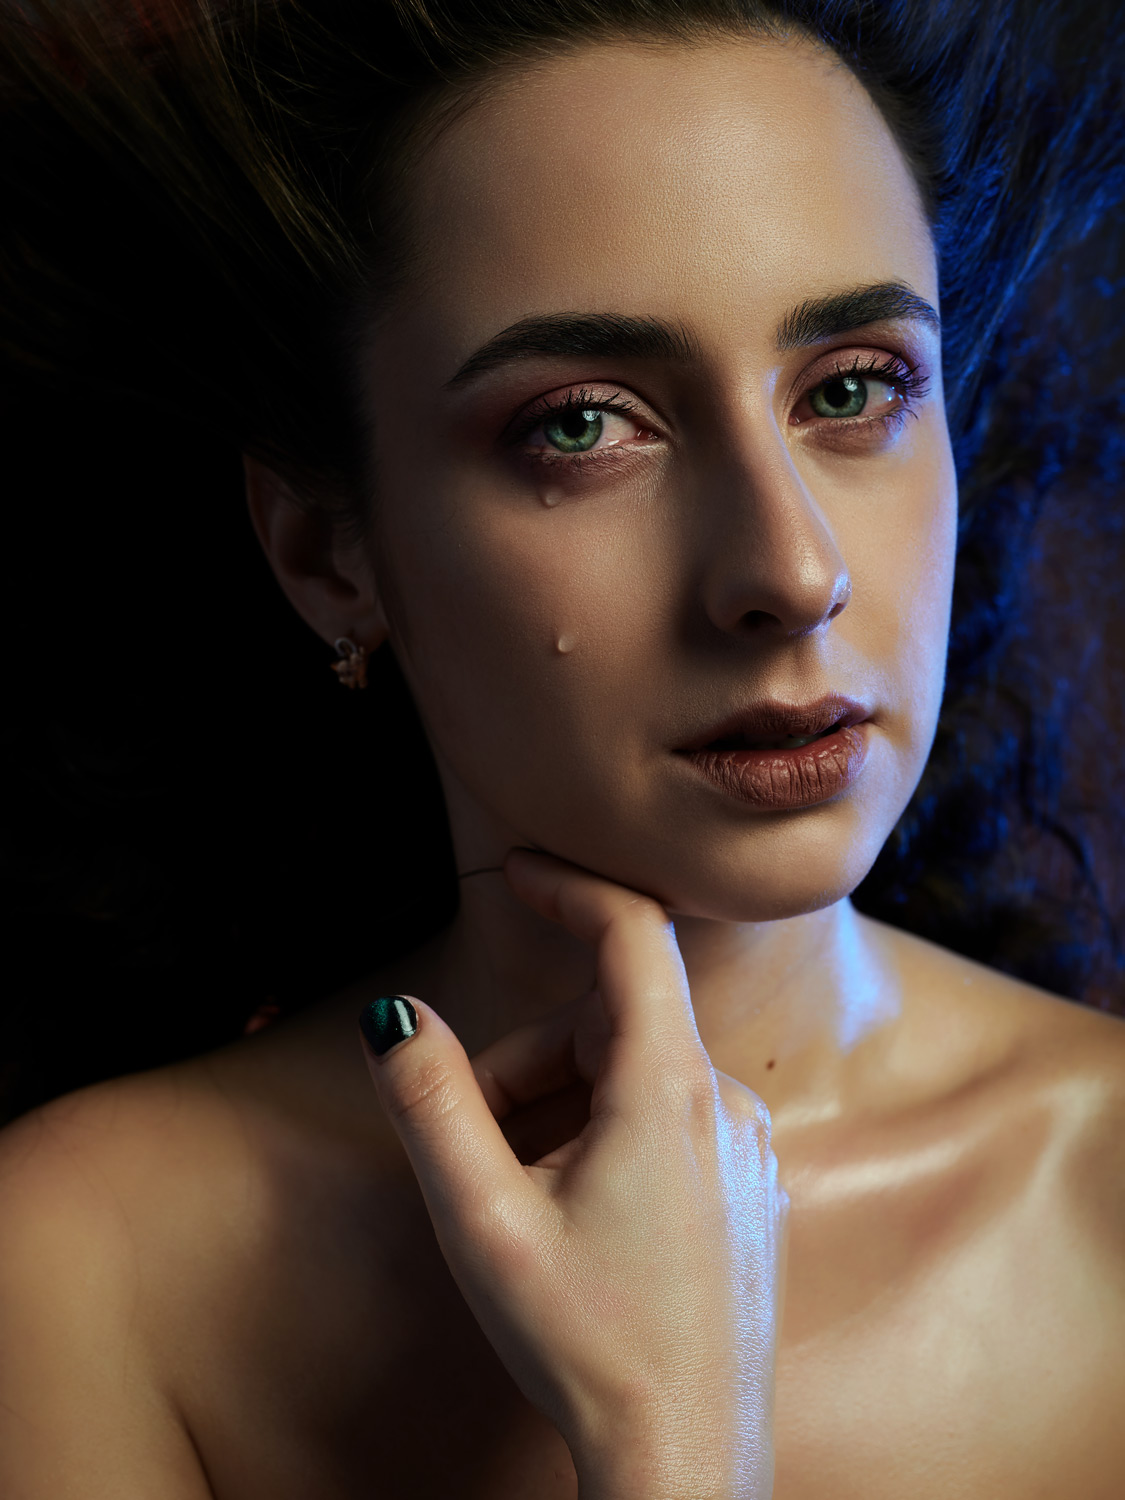 People 1125x1500 women tears model face portrait Gene Oryx makeup painted nails green eyes